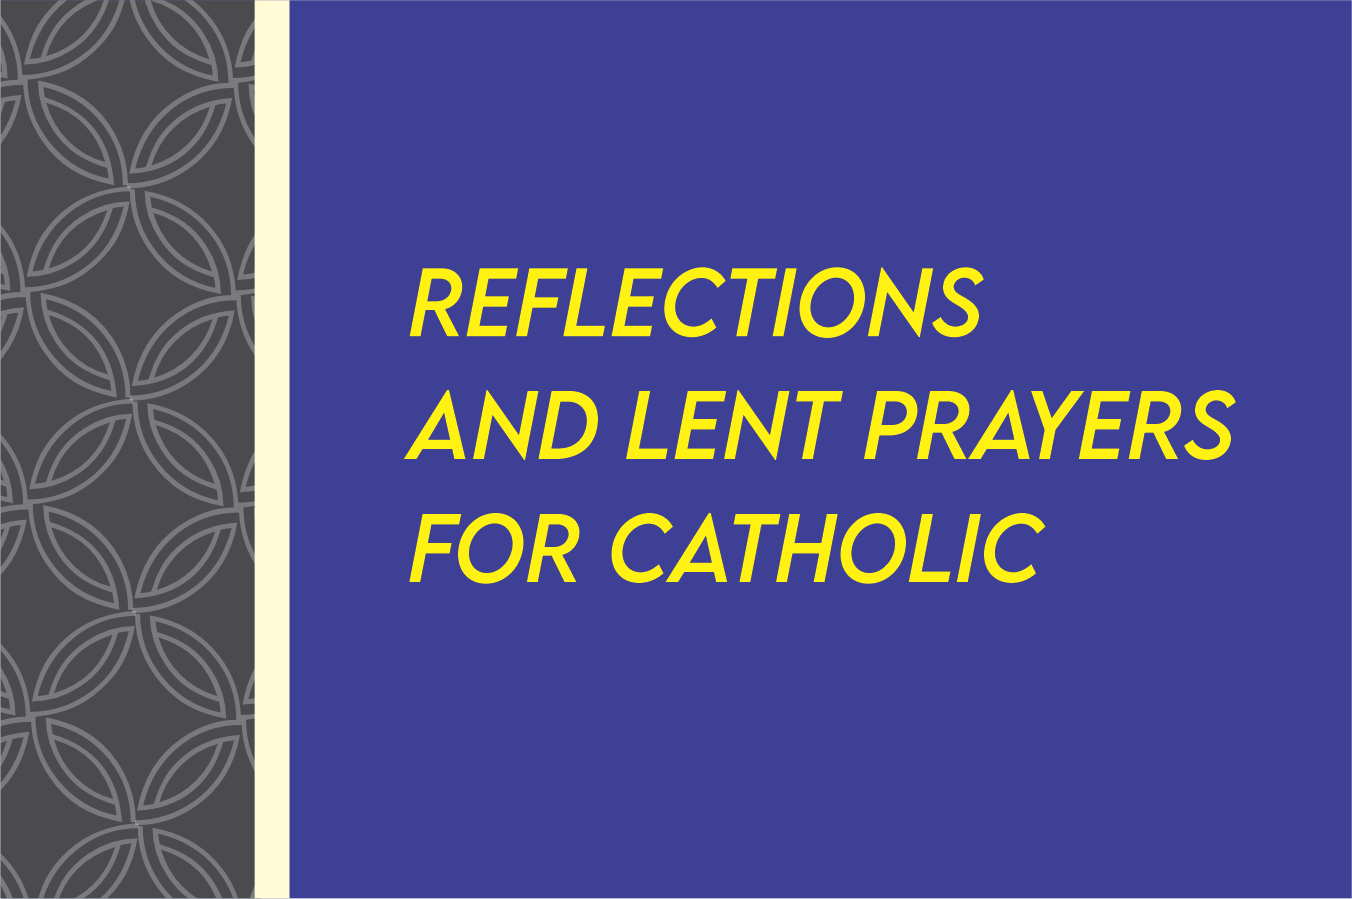 40 days of lent prayers catholic